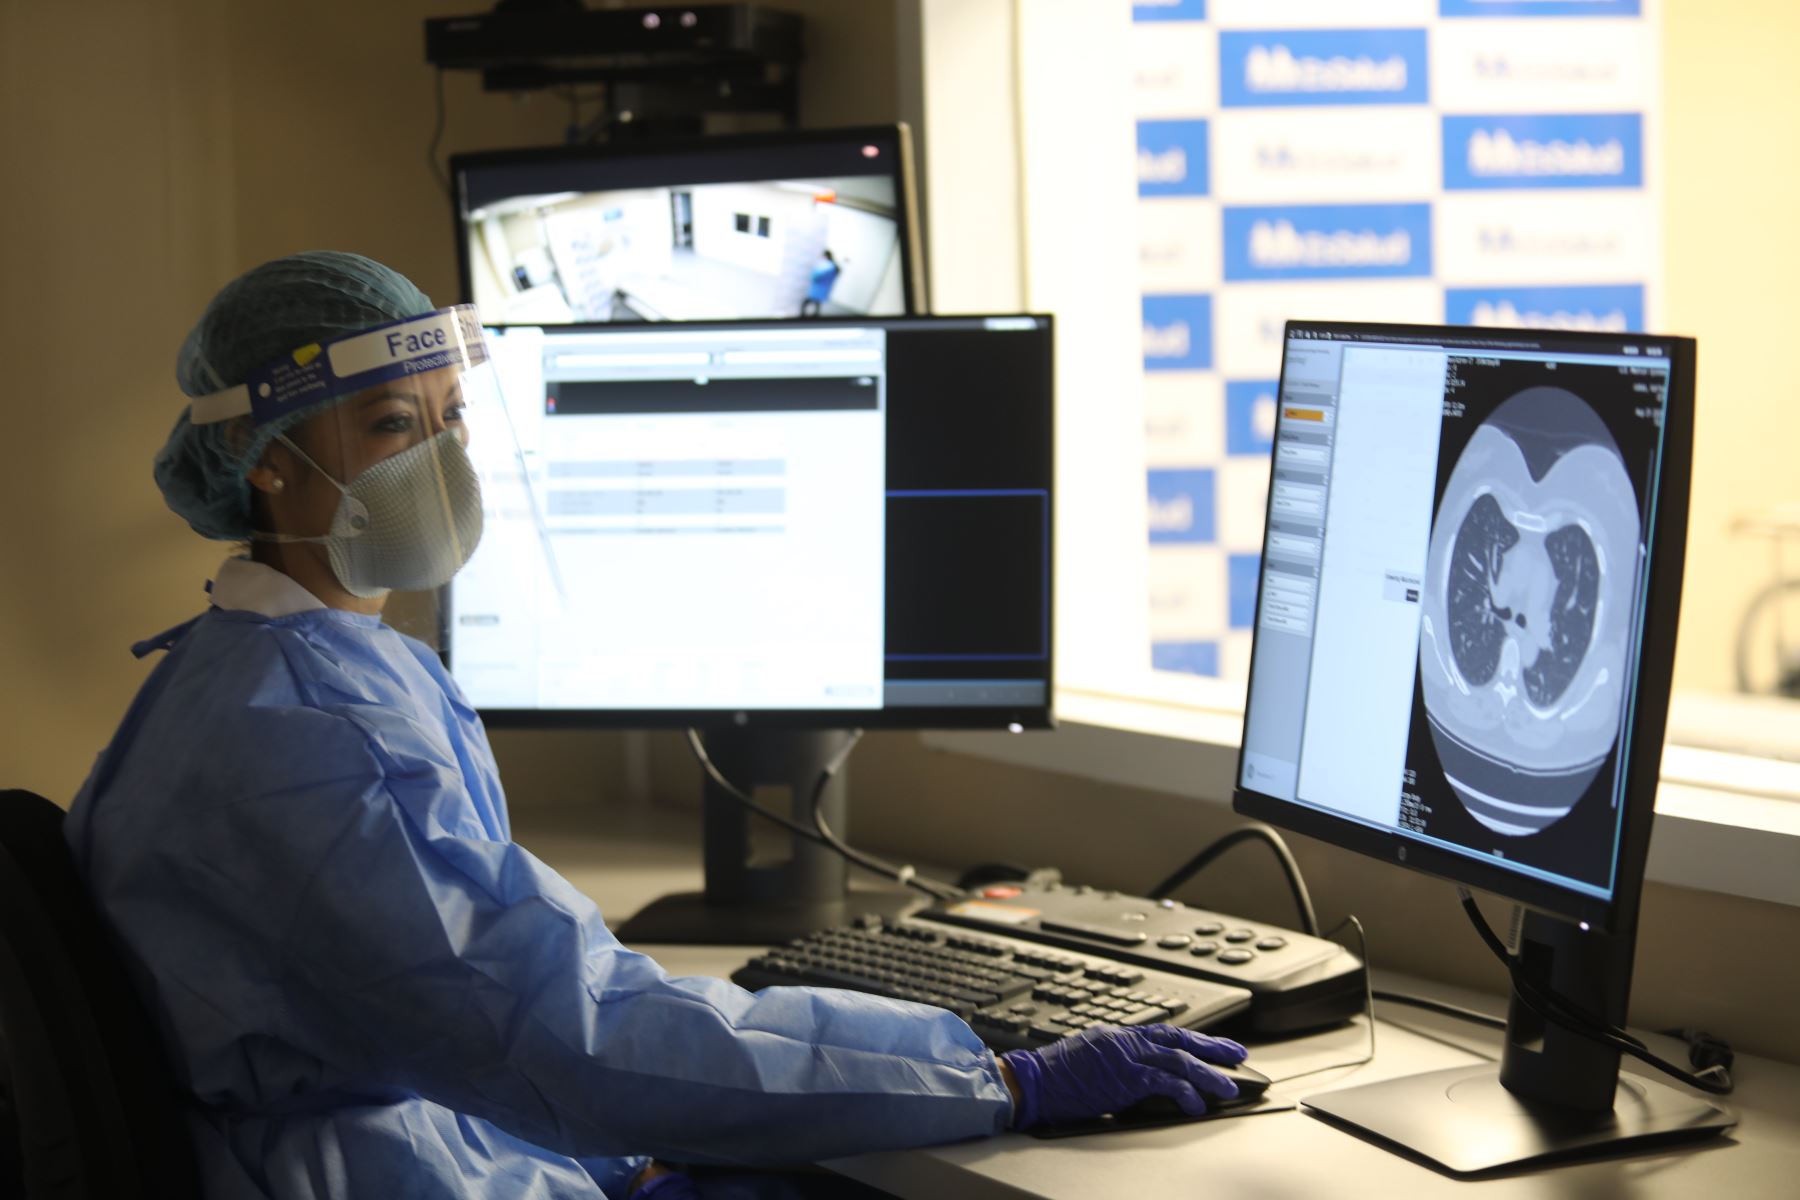 Essalud presentó tomografo de 256 cortes que permitirá dar diagnósticos de alta precisión, este equipo de alta gama fue instalado en el servicio de Tomografía y Resonancia Magnética del hospital Rebagliati.Foto:ANDINA Essalud